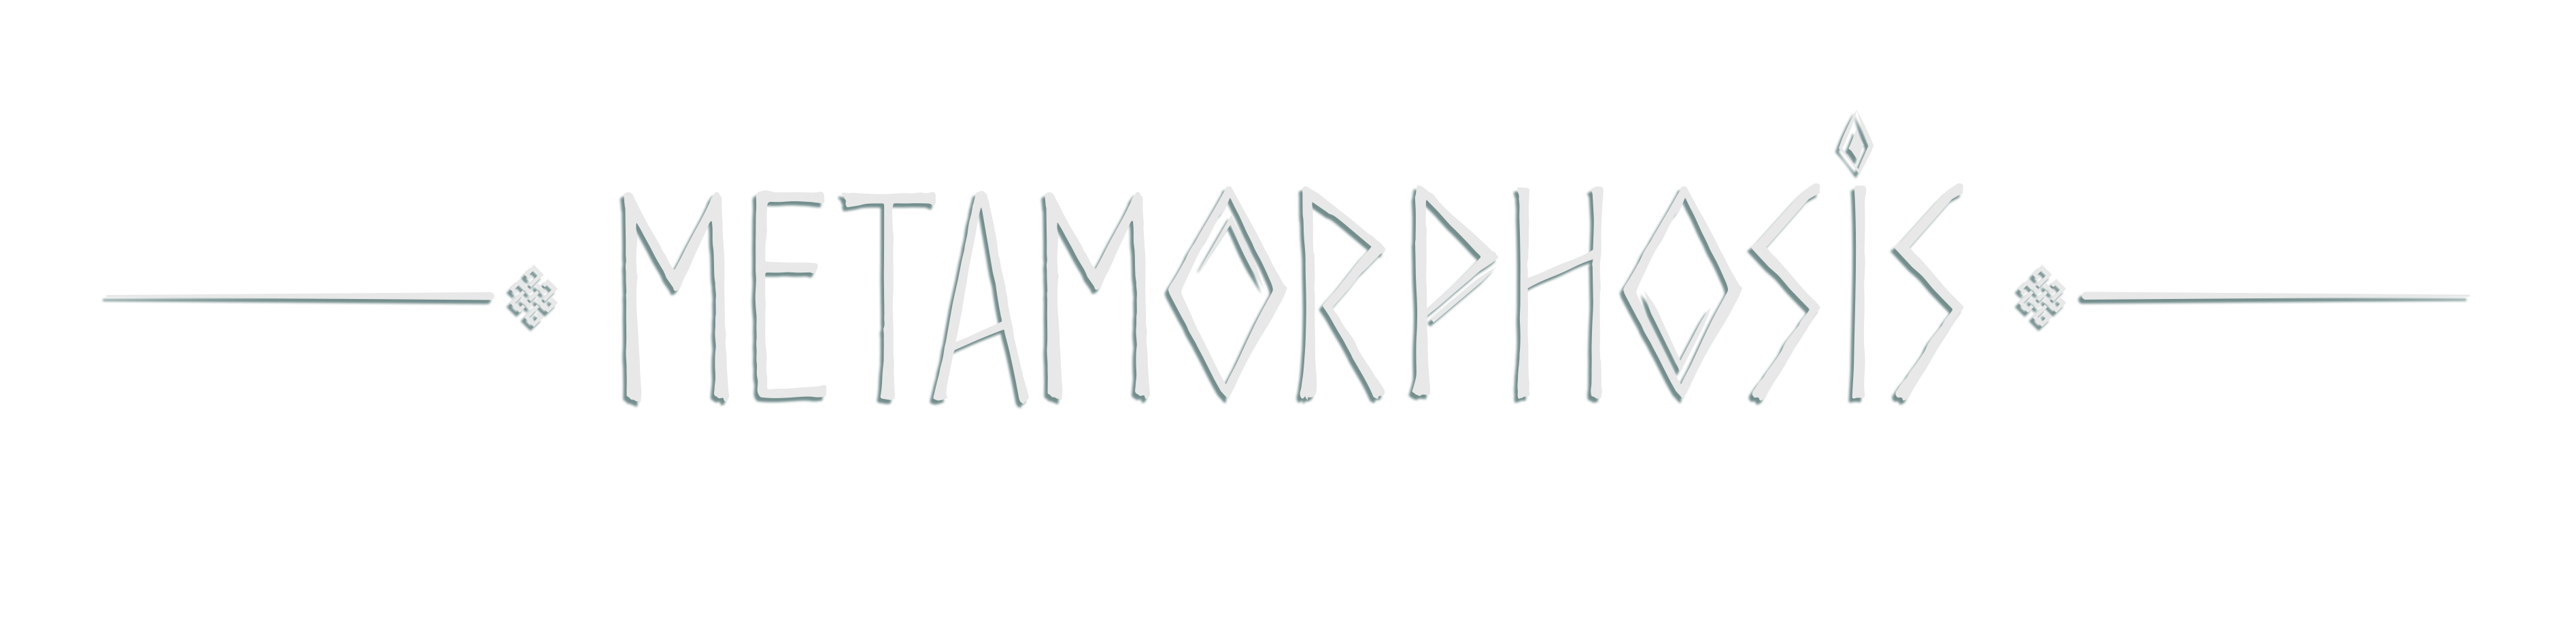 METAMORPHOSIS